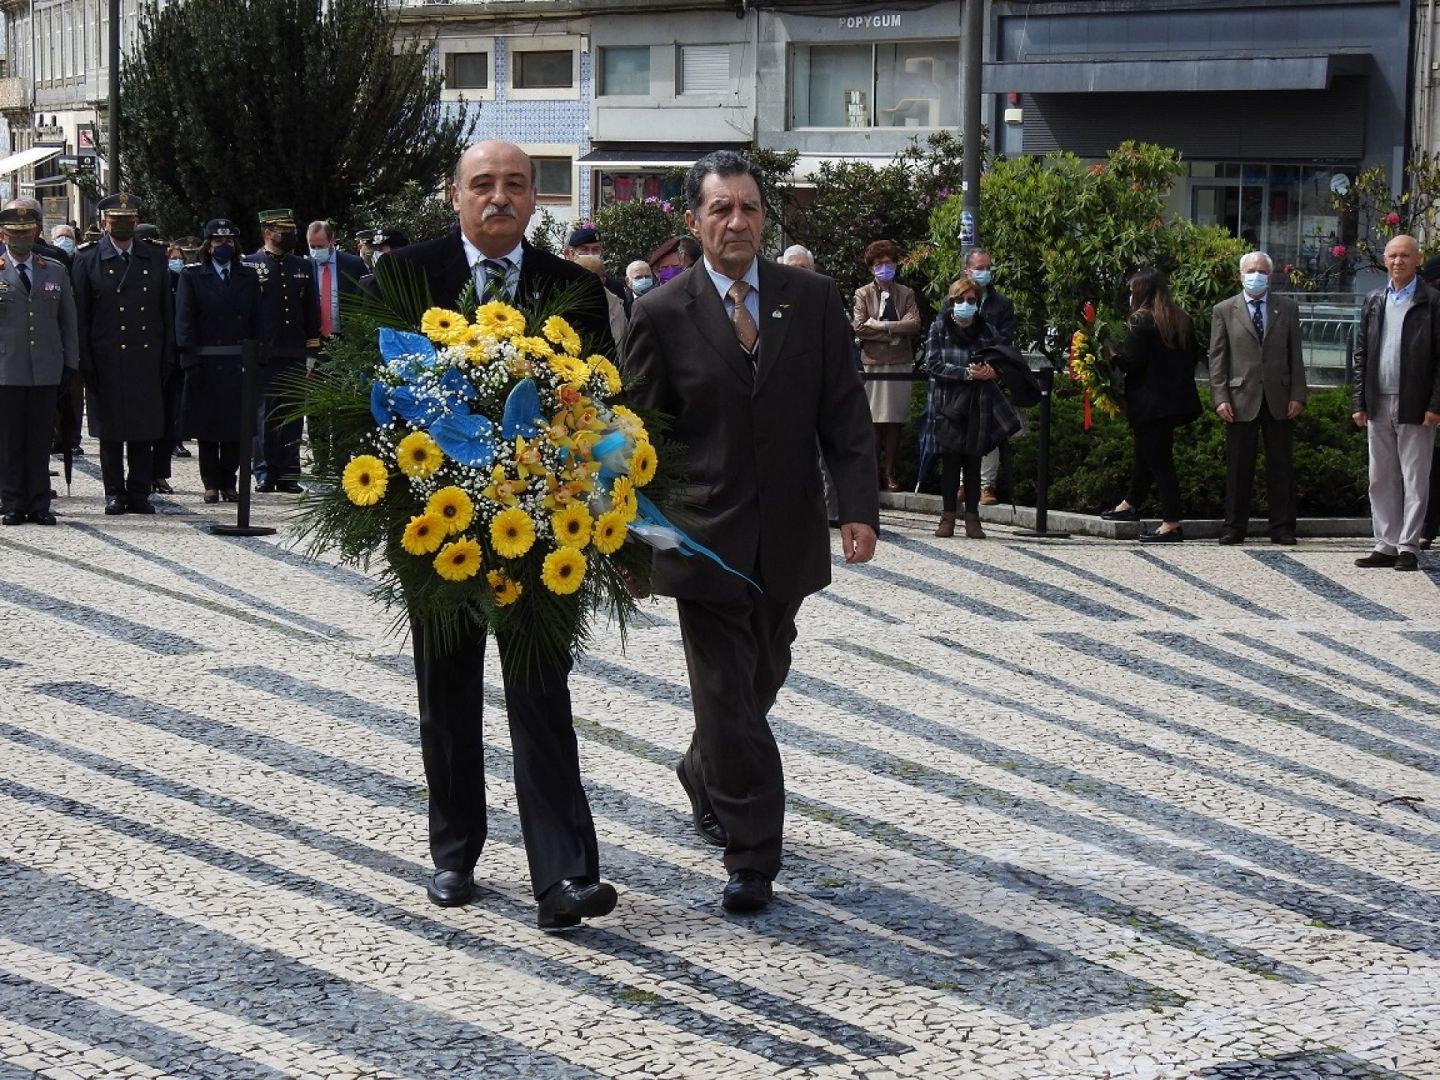 Núcleo do Porto da A.E.F.A. presente na cerimónia comemorativa do Dia Do Combatente